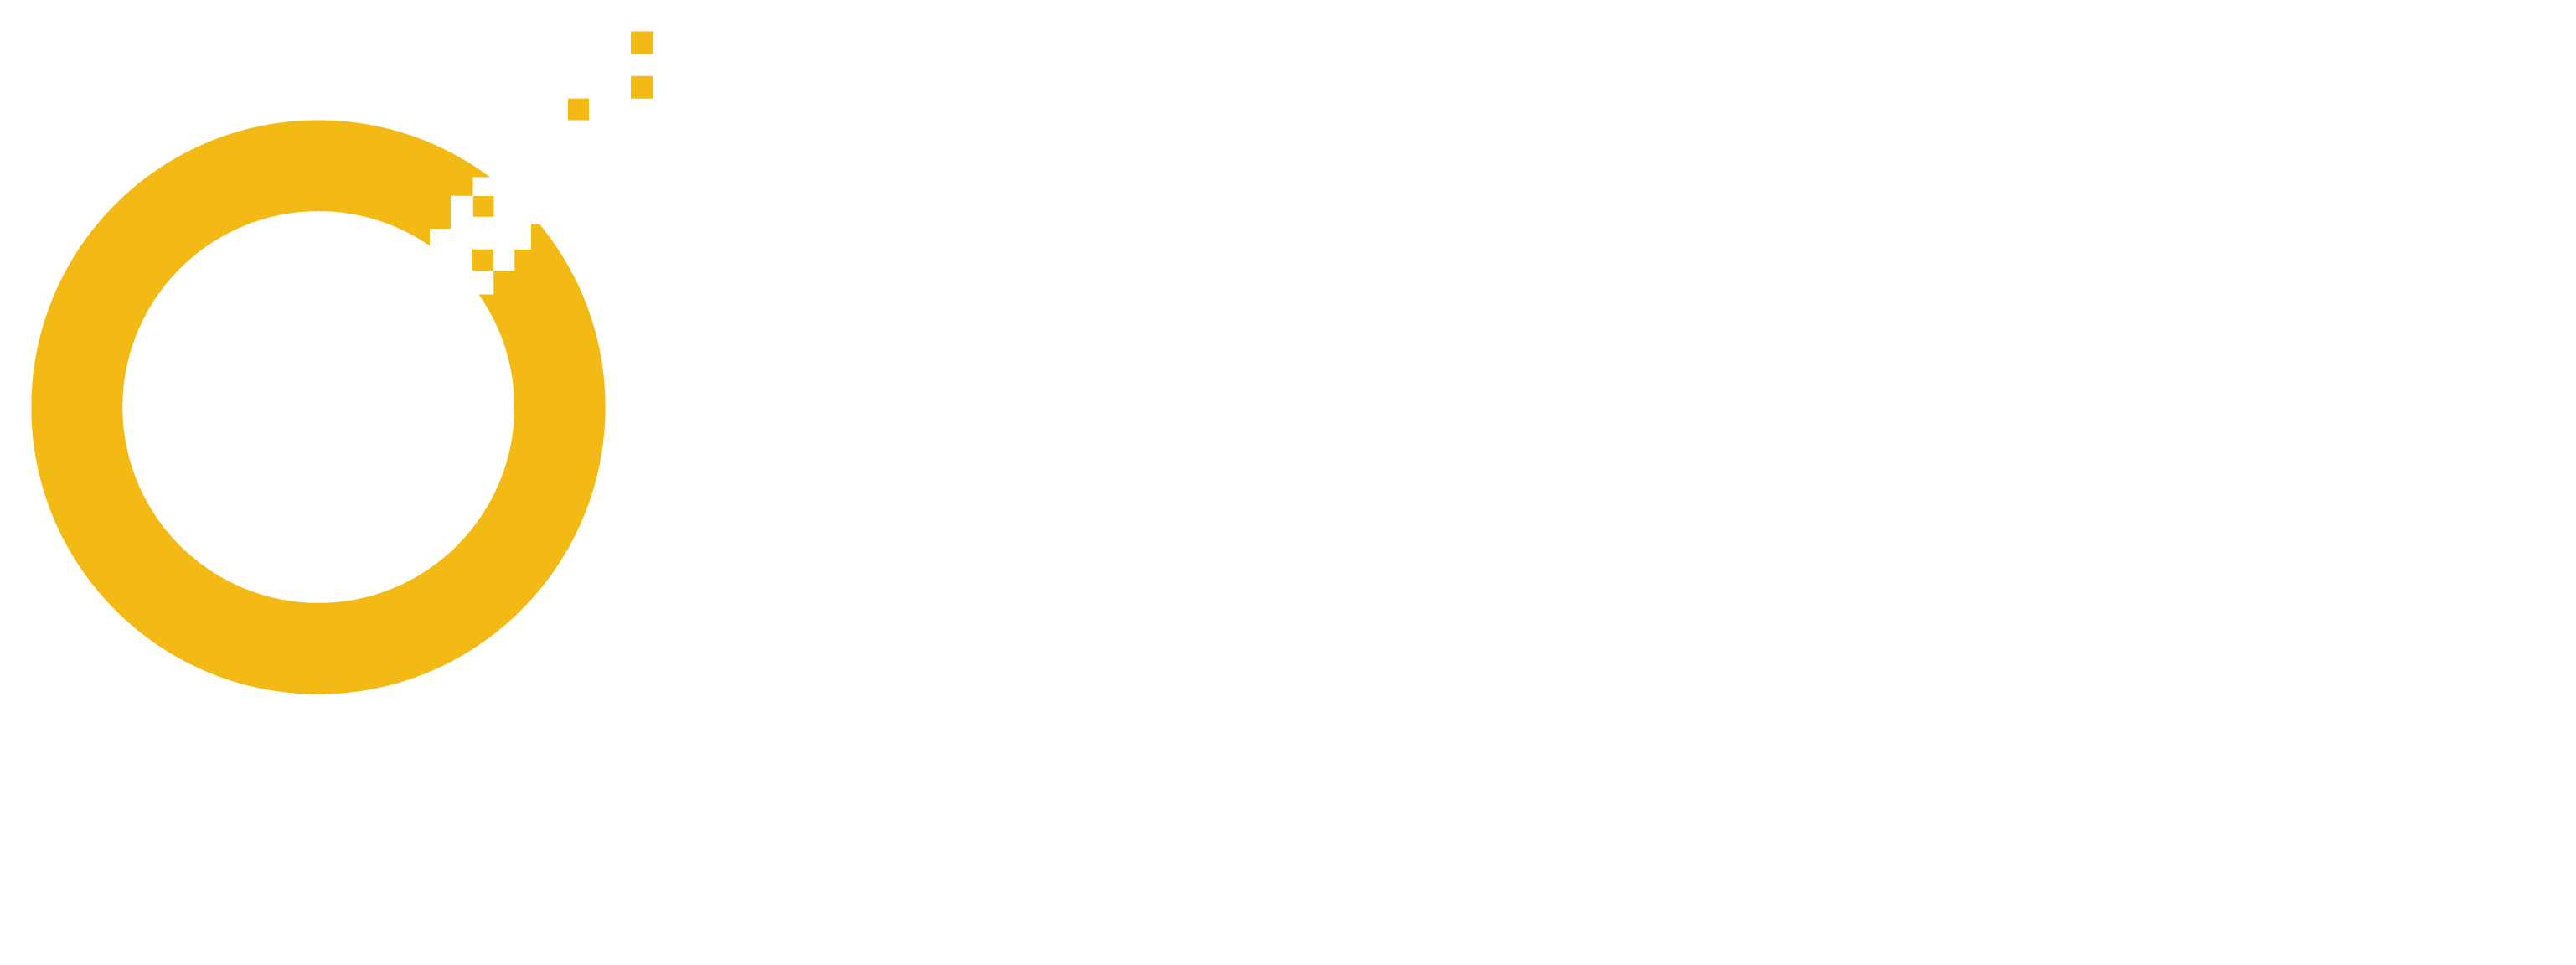 Symantec-Logo